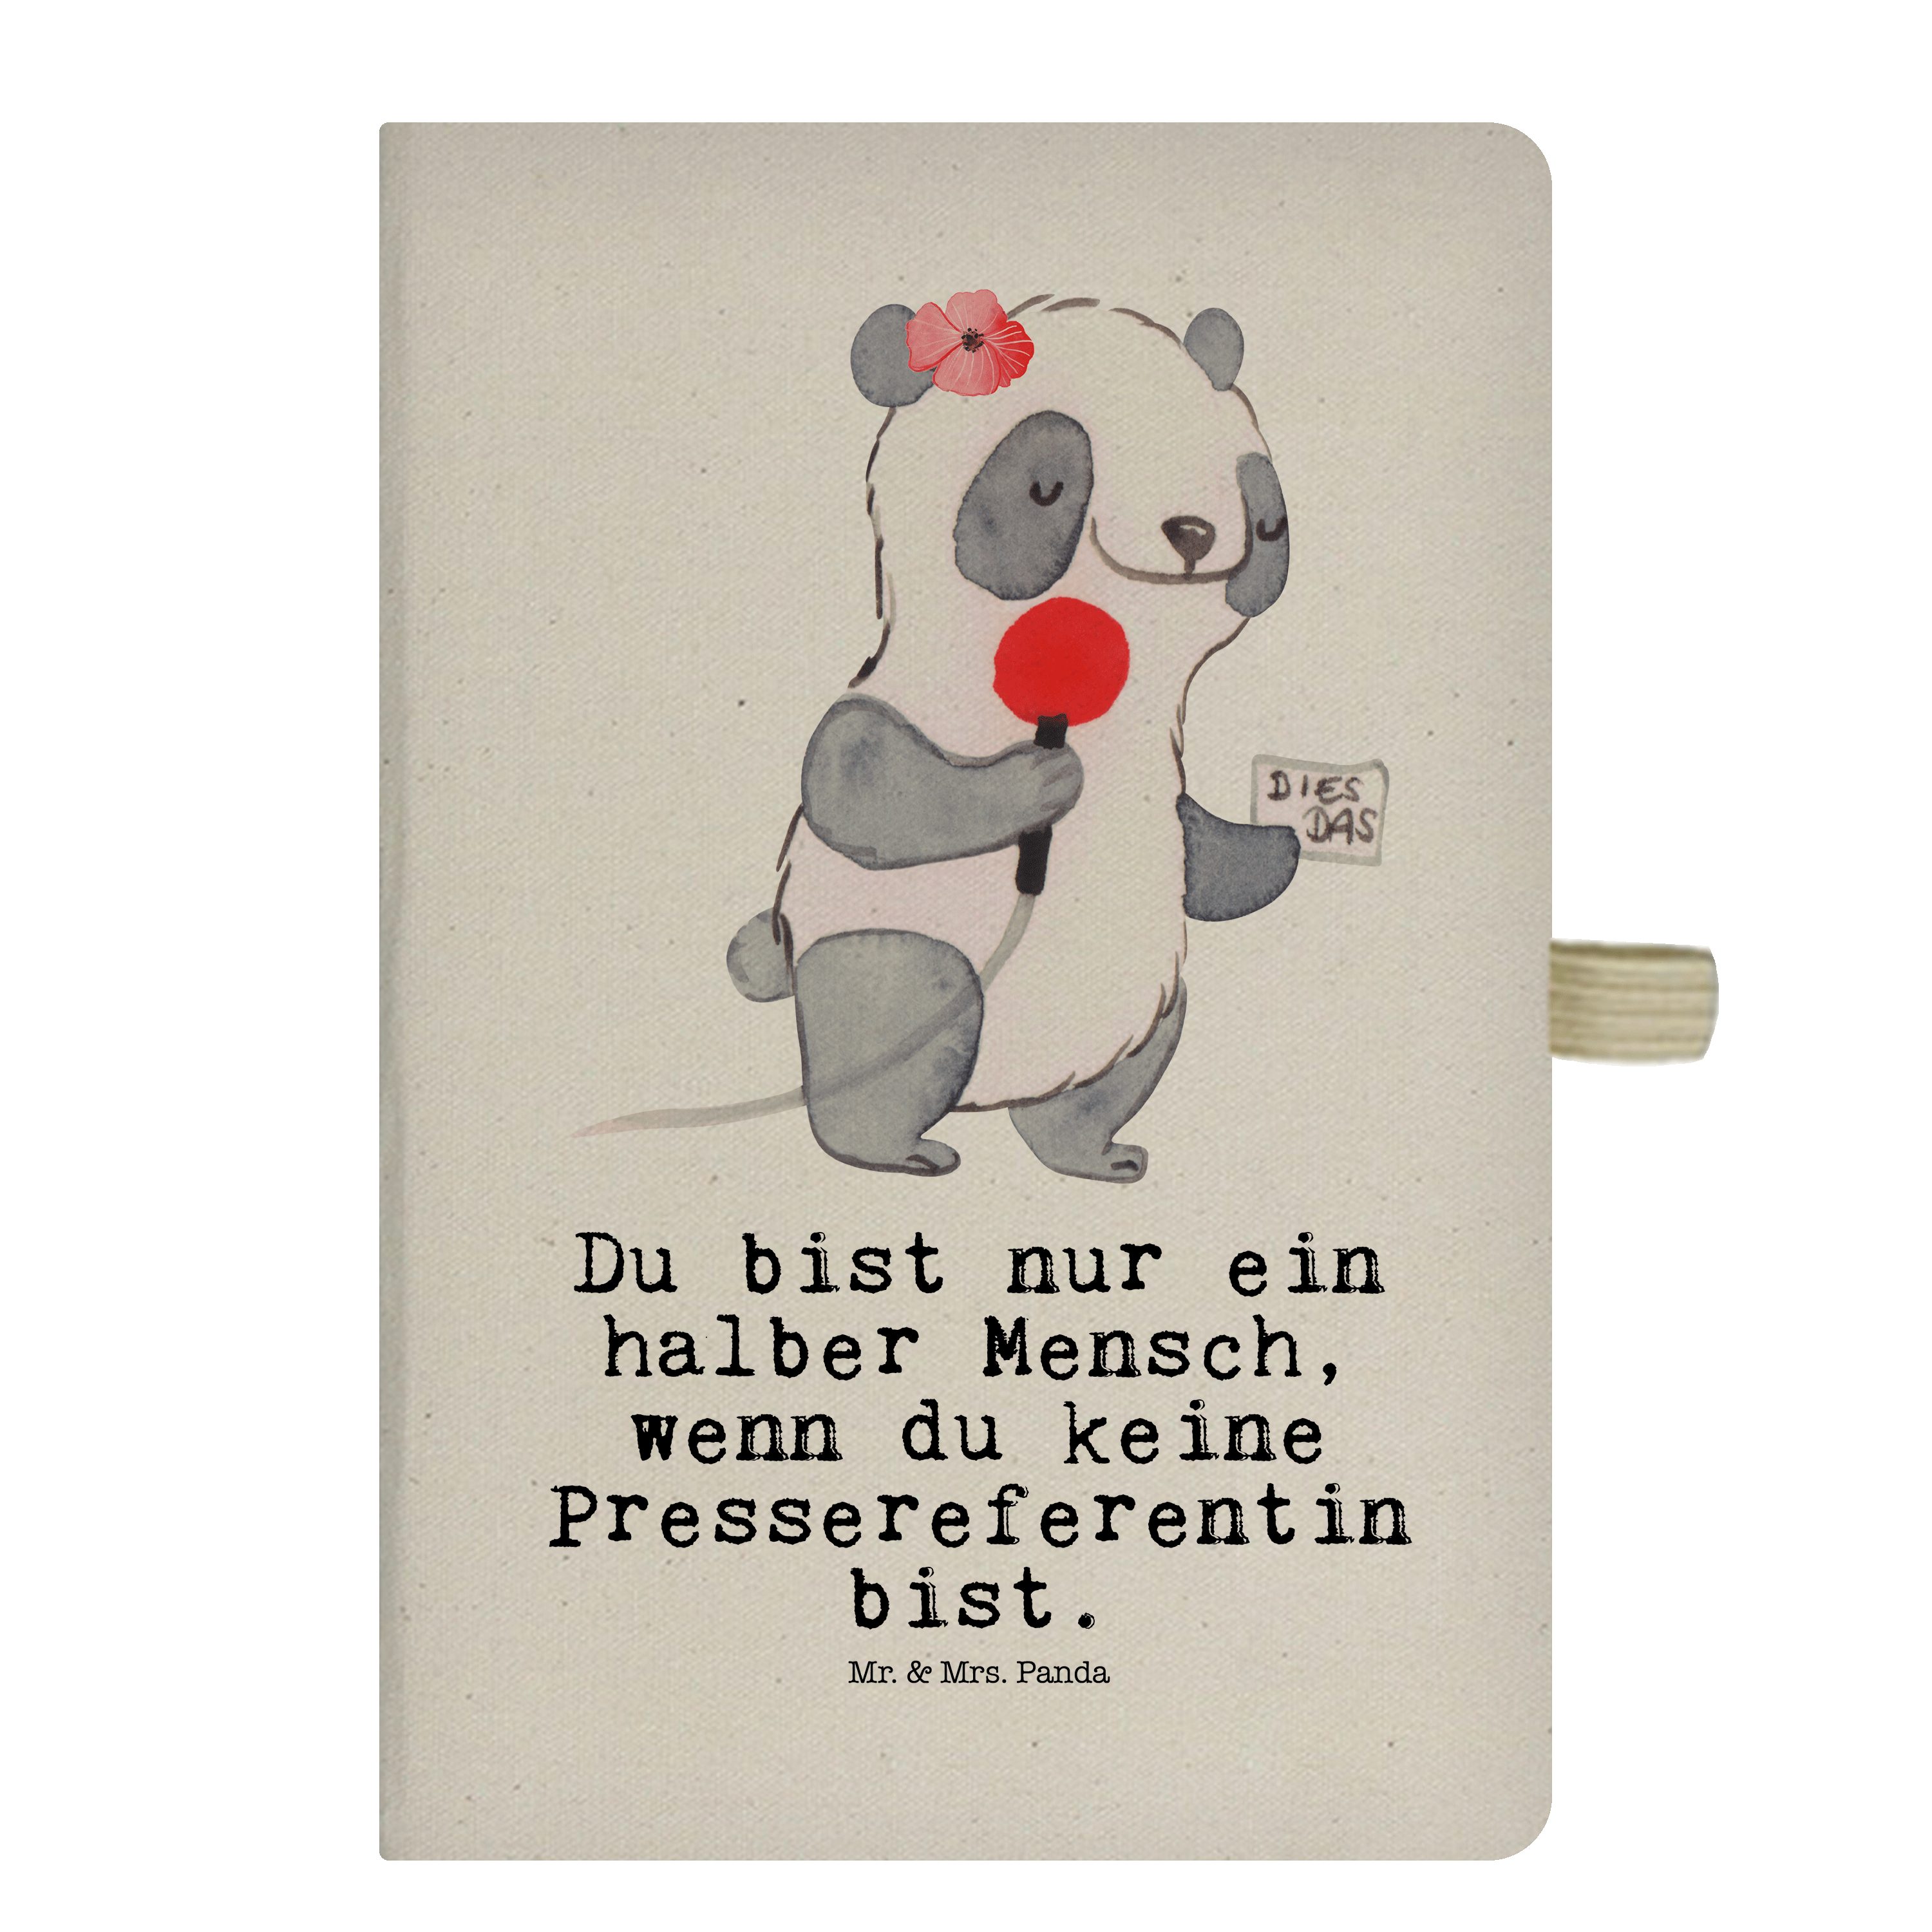 Mr. & Mrs. Panda Notizbuch Pressereferentin mit Herz - Transparent - Geschenk, Mitarbeiter, Eint Mr. & Mrs. Panda